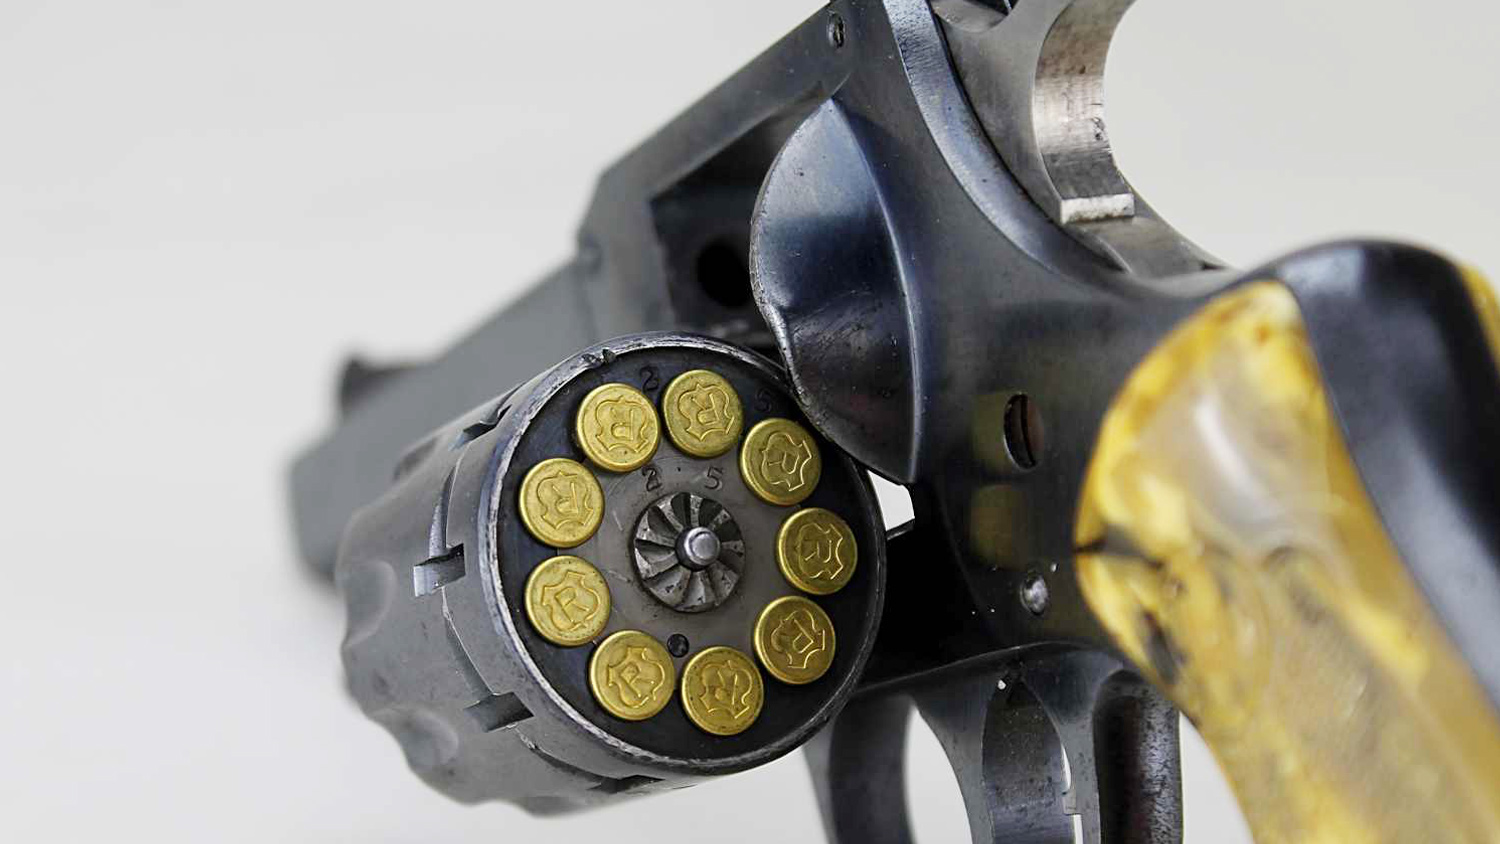 H&amp;R Model 929 revolver cylinder